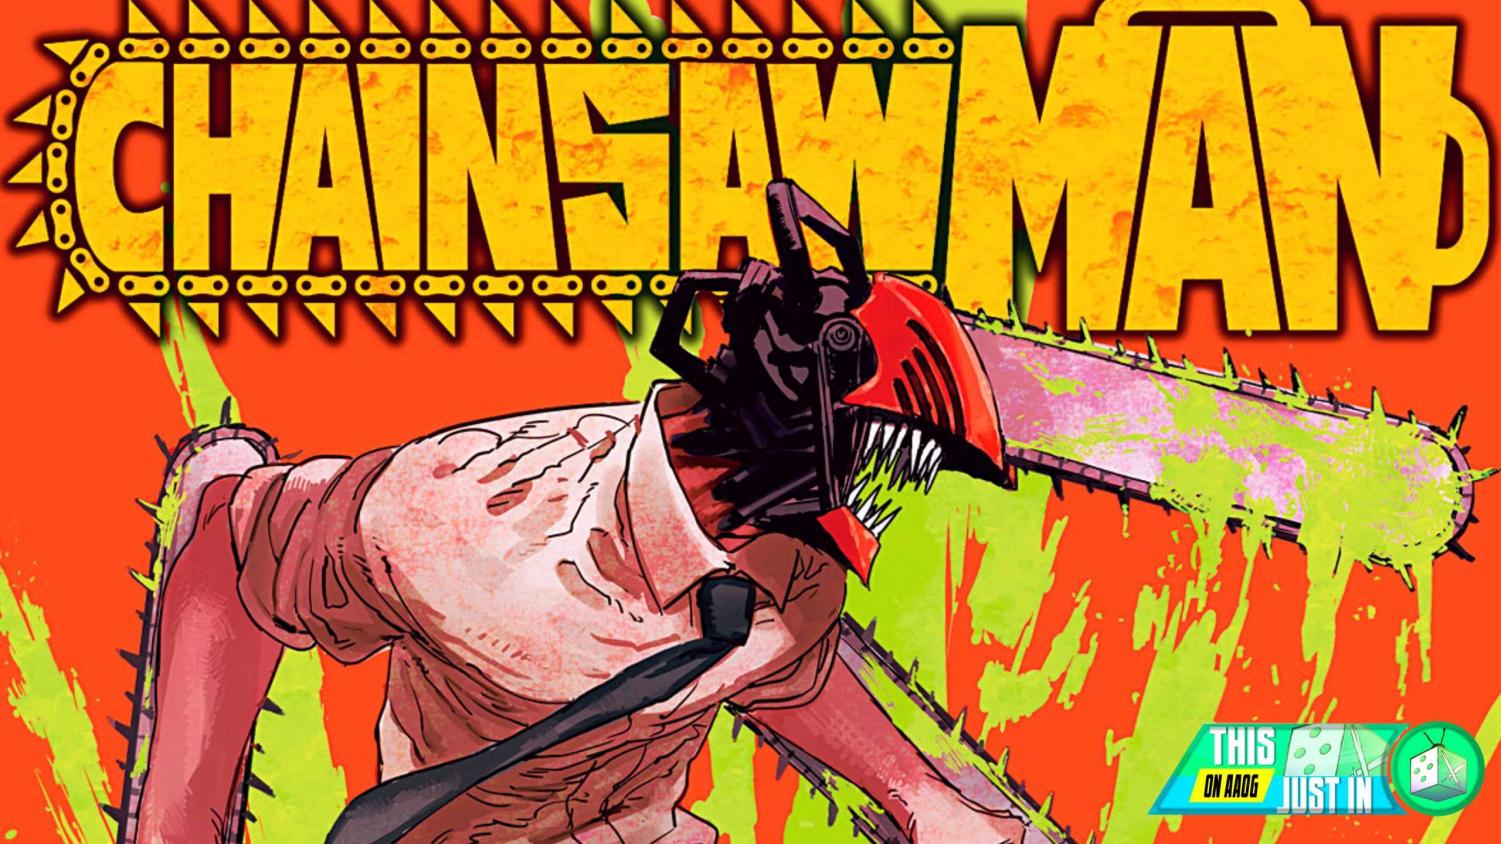 Chainsaw Man, Vol. 5  Man, Comic book cover, Chainsaw